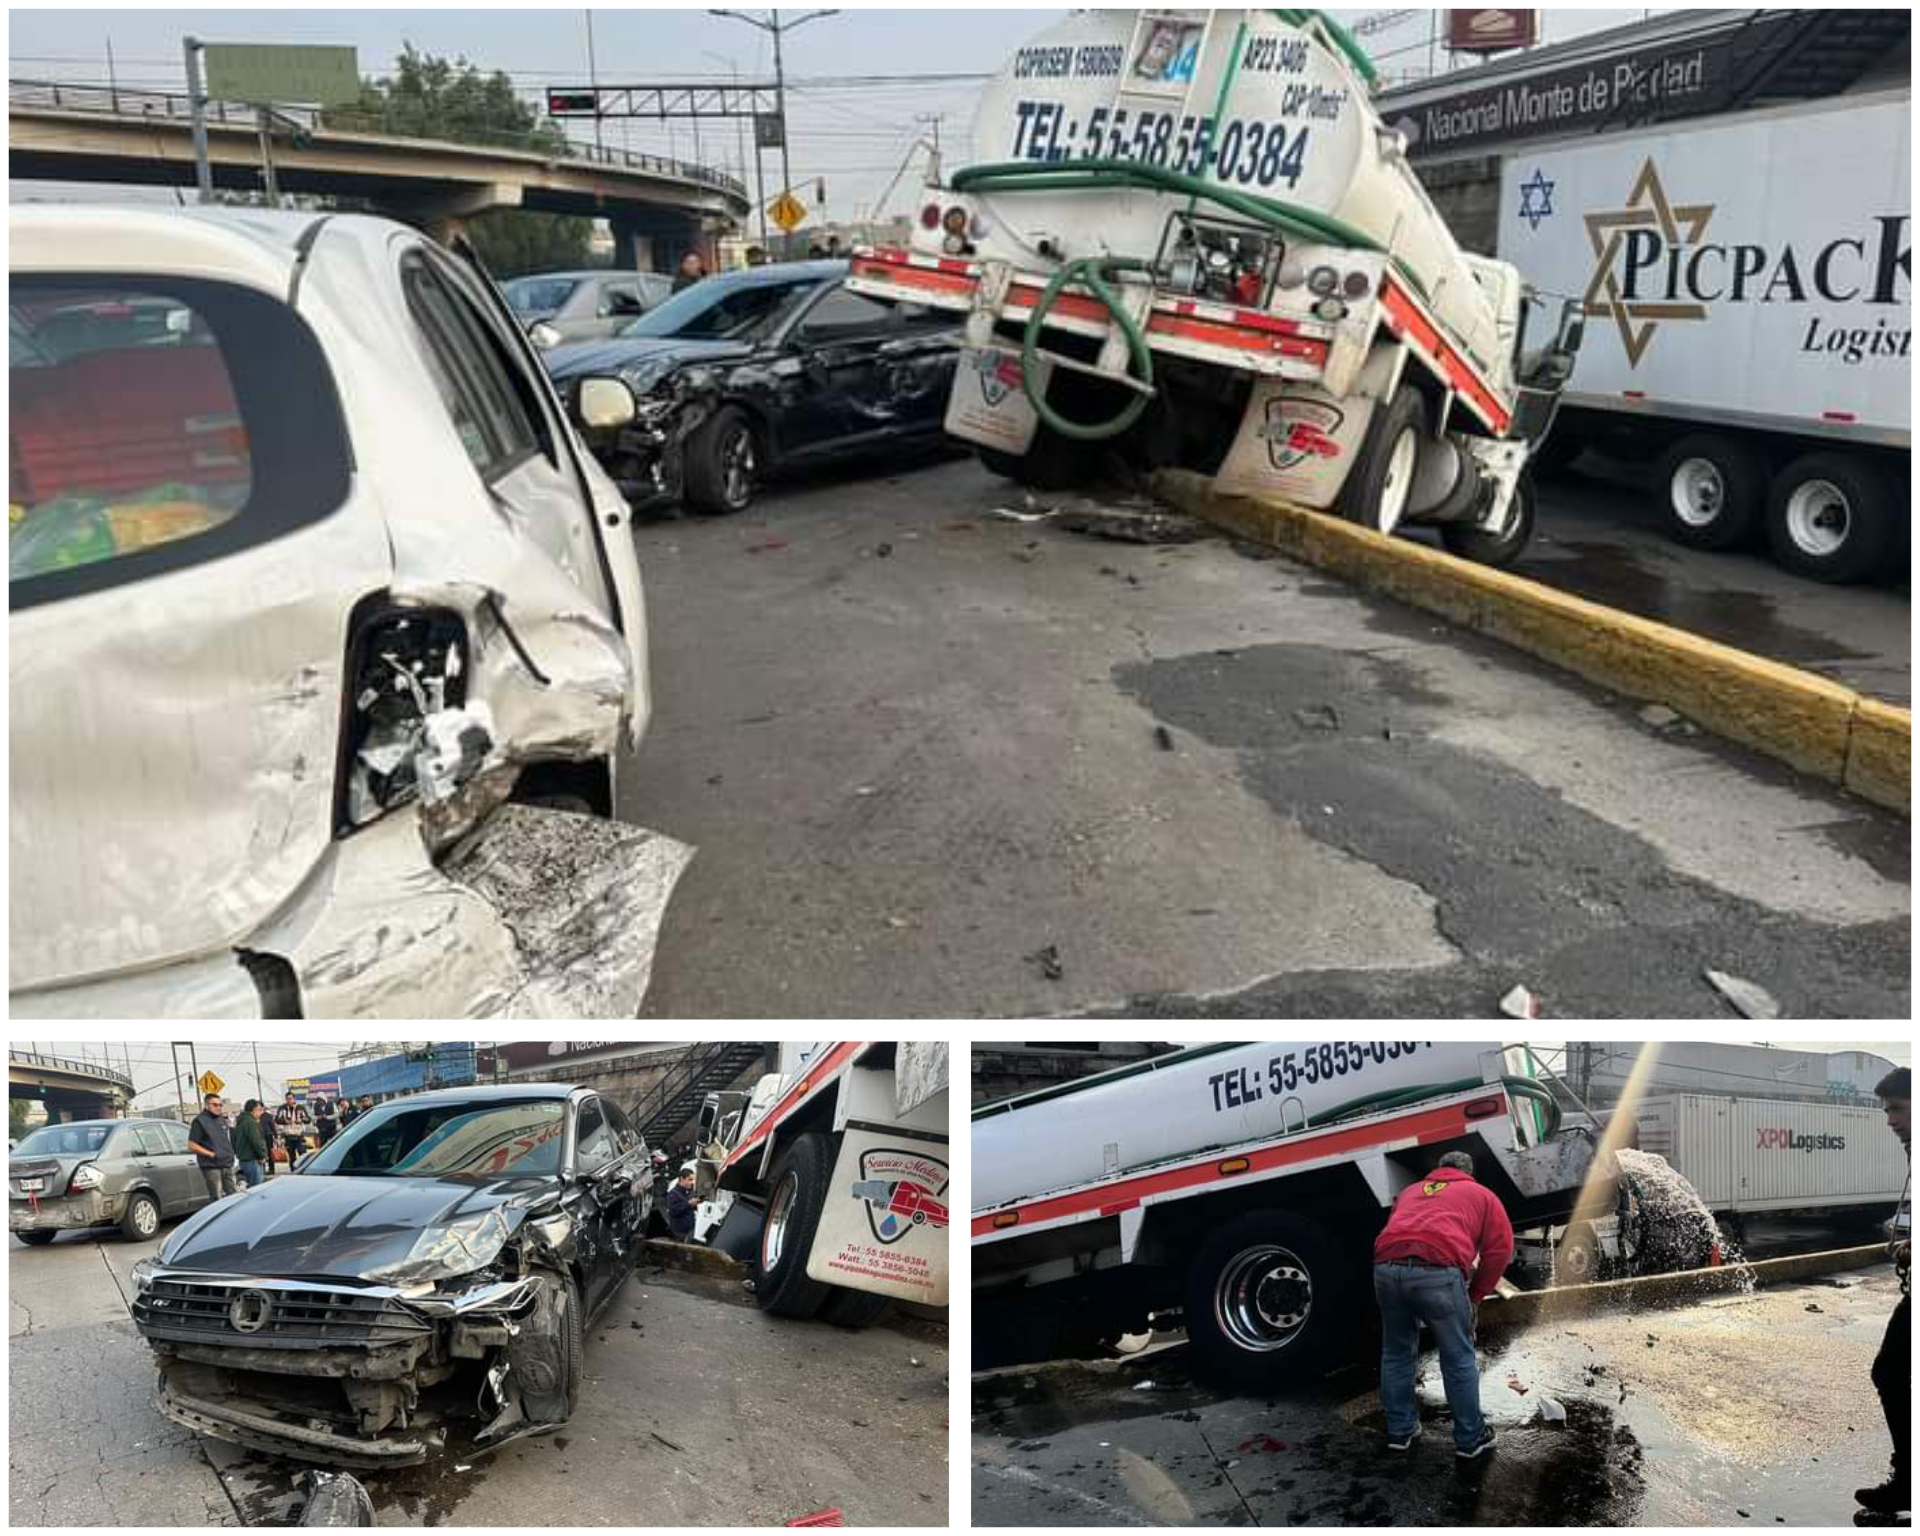 Pipa protagoniza accidente en Tenayuca #regionmx 